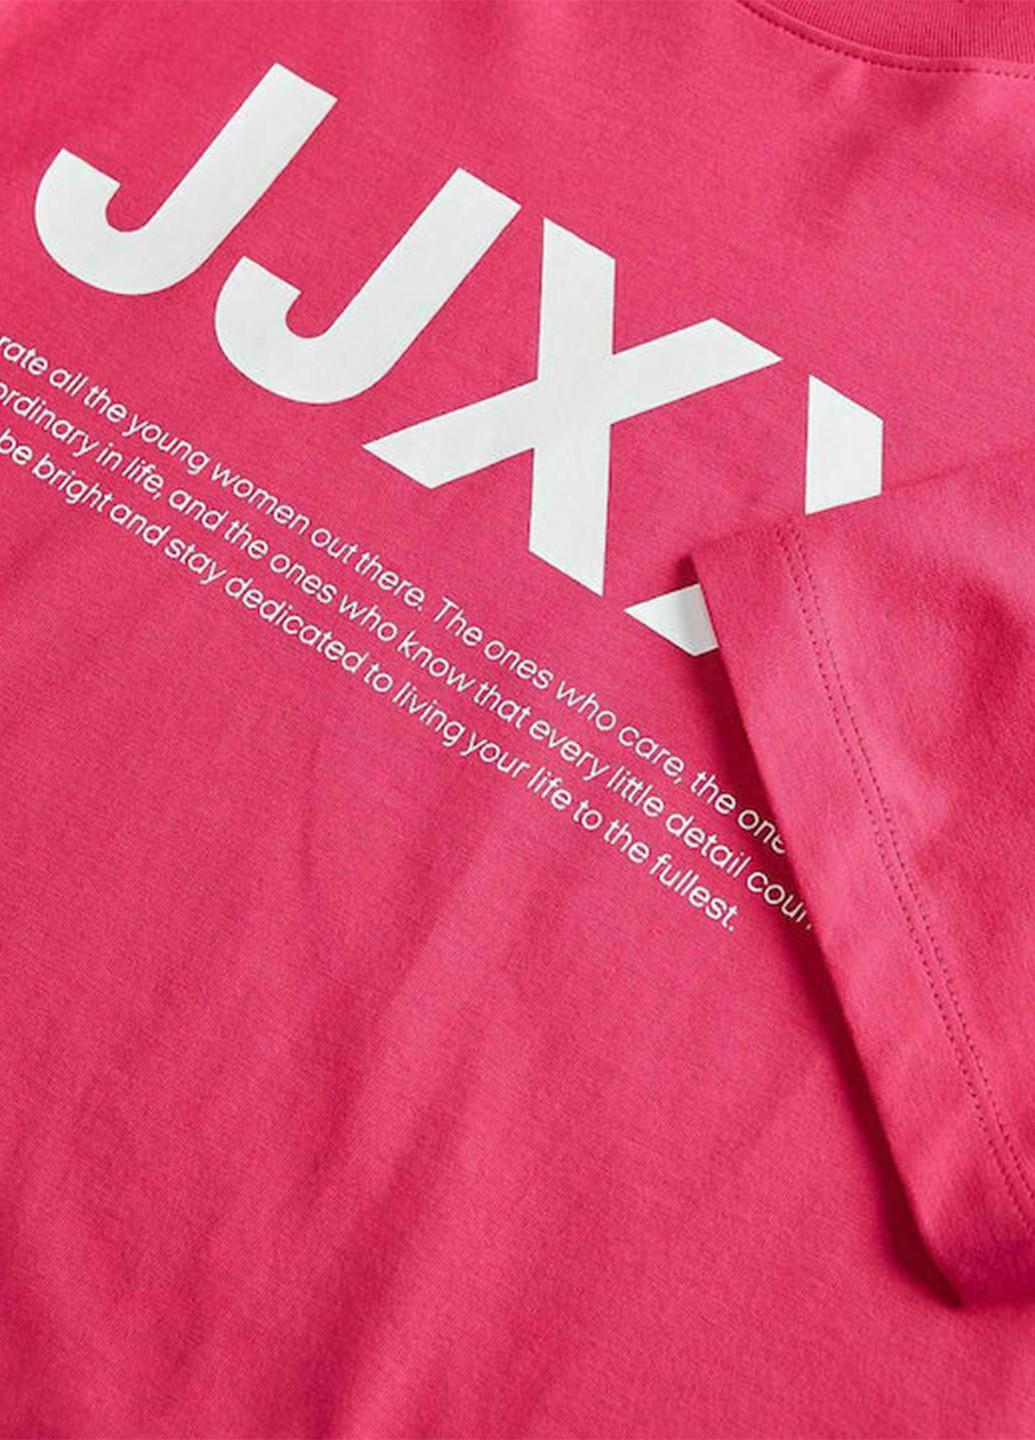 Рожева літня футболка JJXX